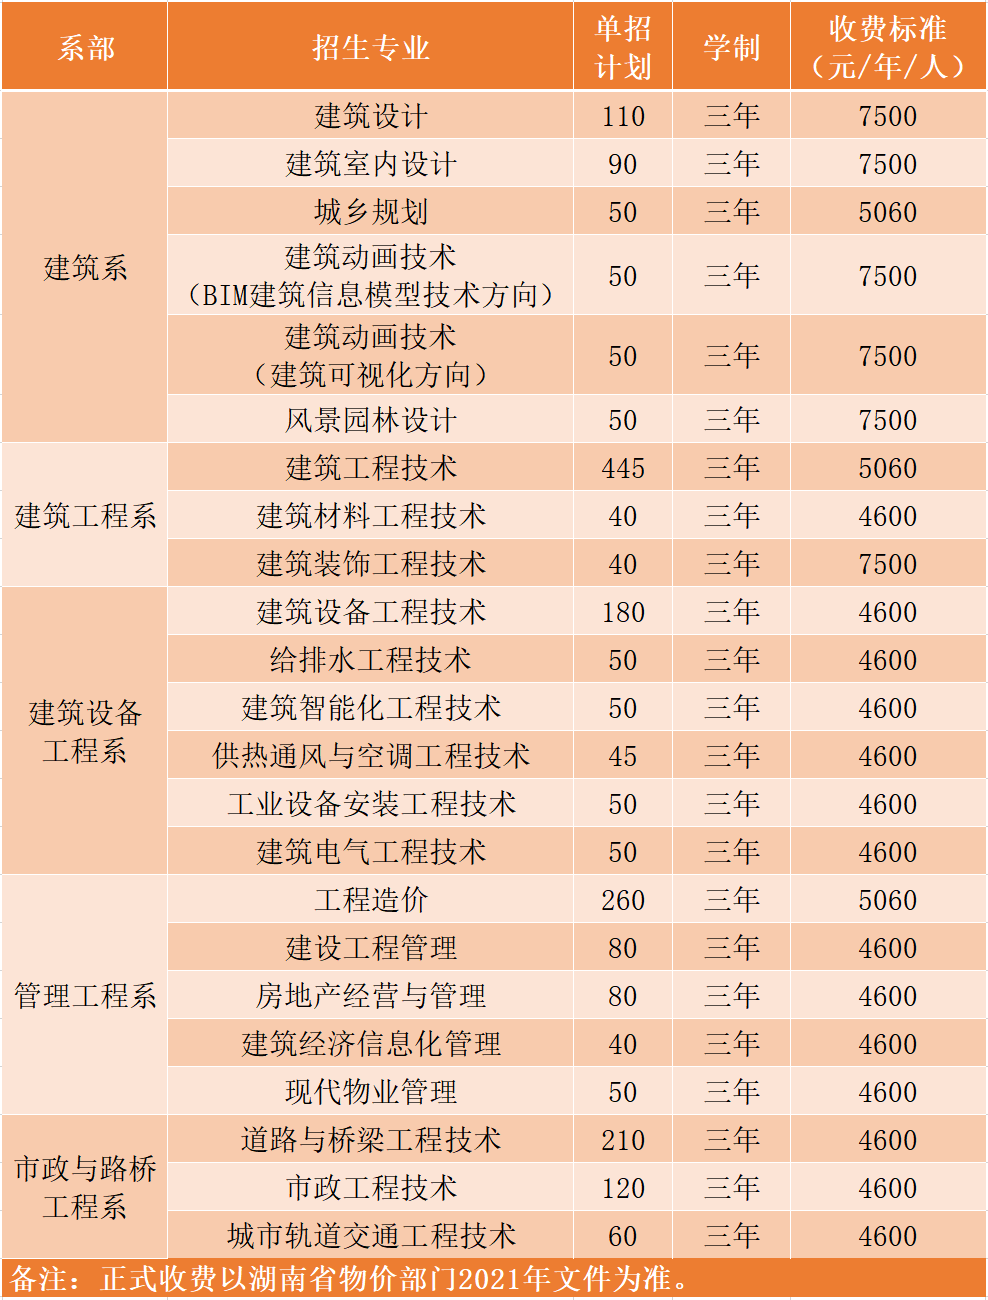 湖南城建职业技术学院2021年单独招生简章(图2)